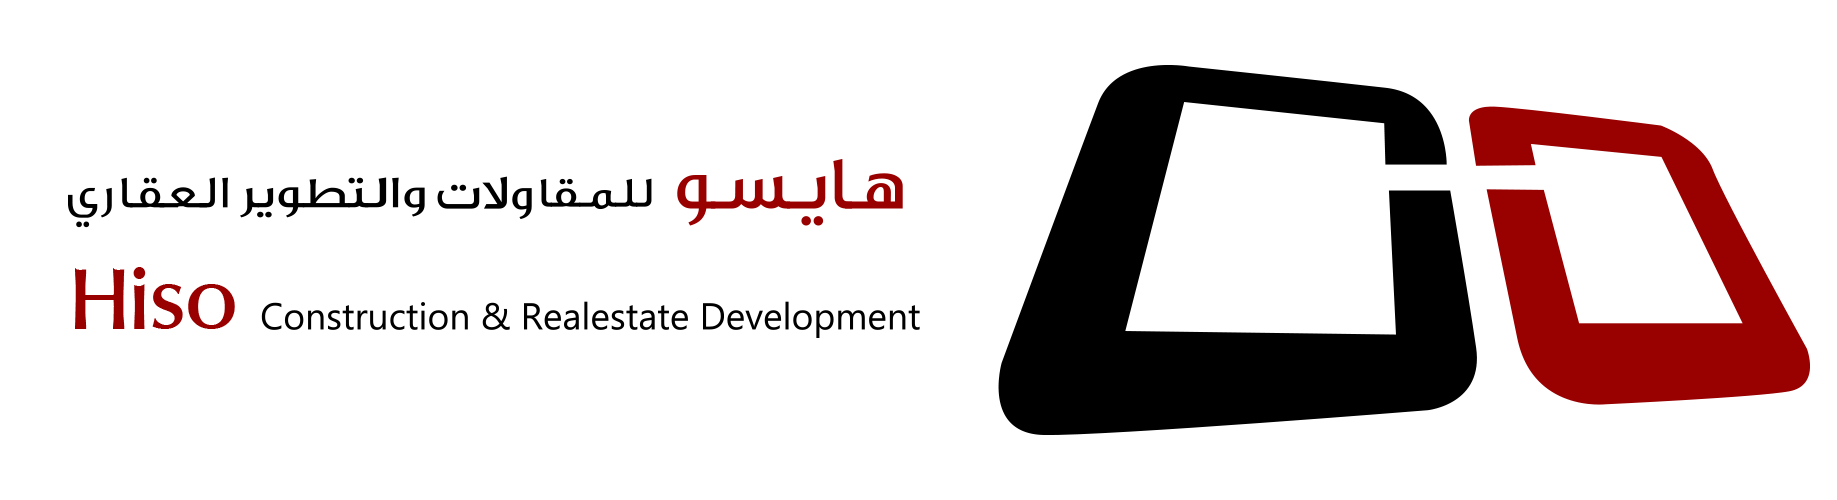 hiso logo